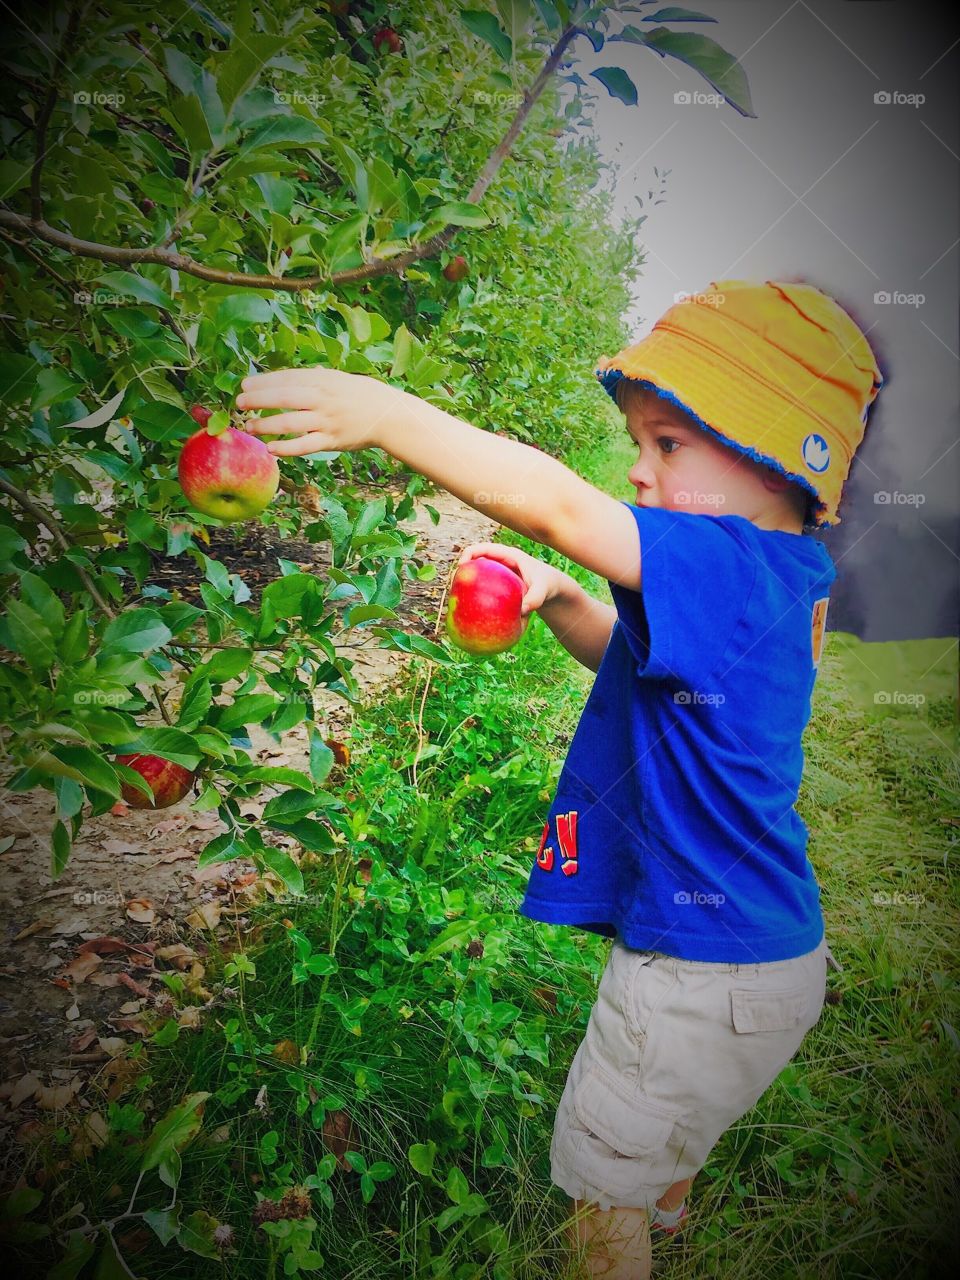 Picking apples 